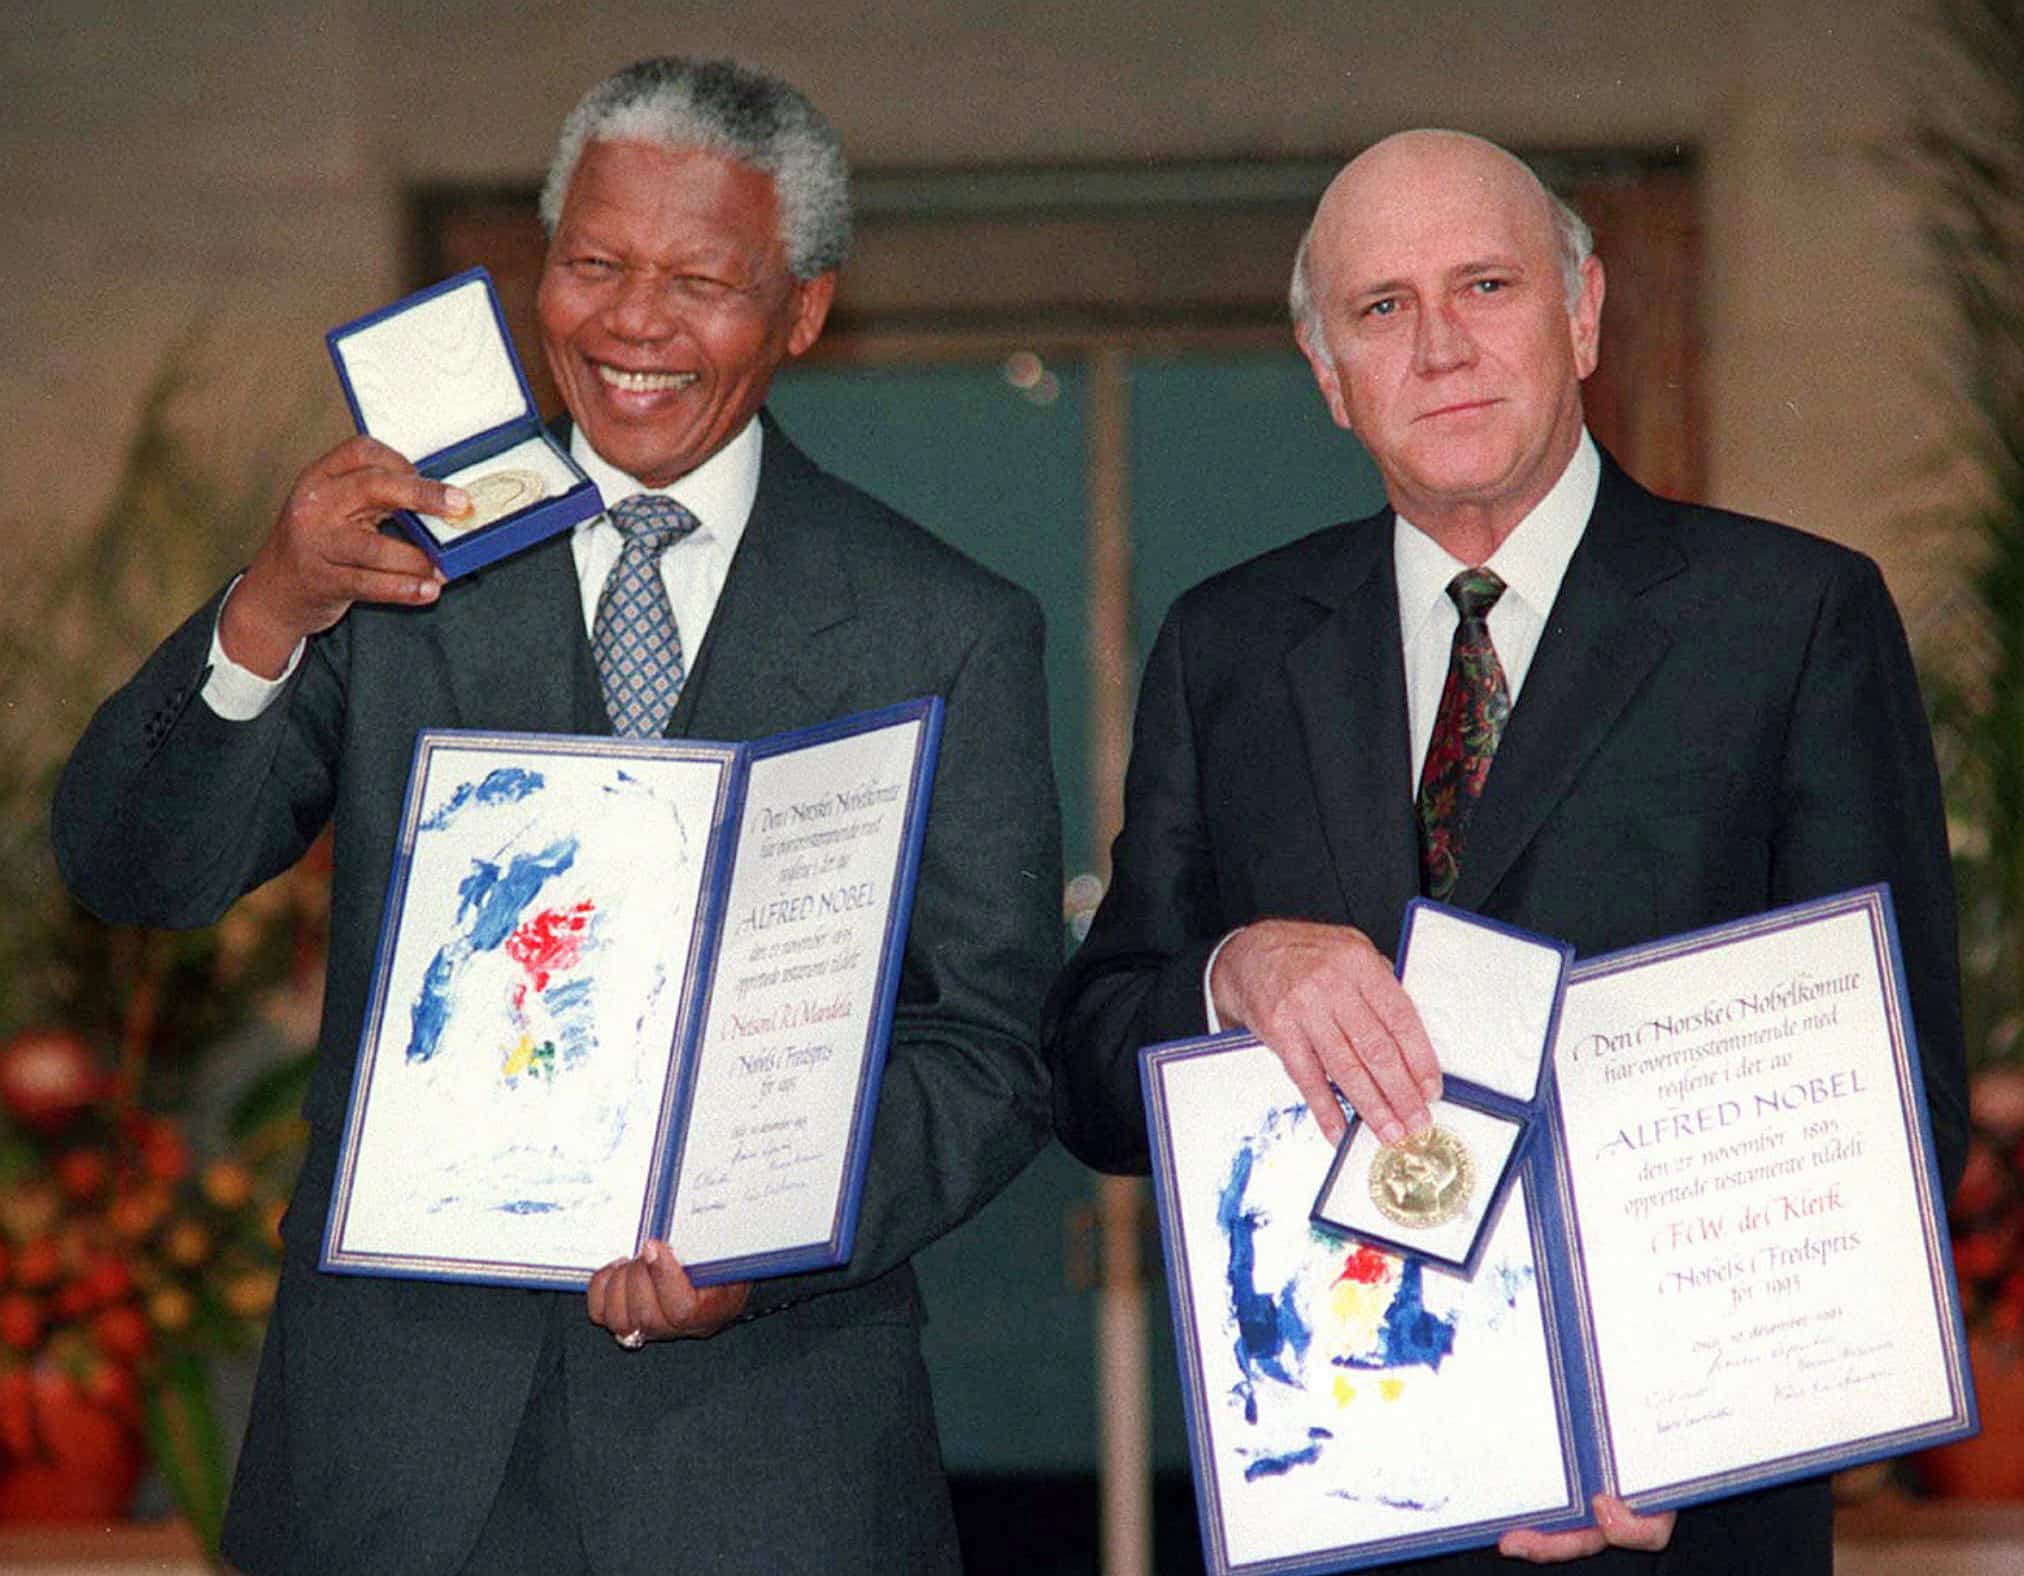 Nelson Mandela and De Klerk